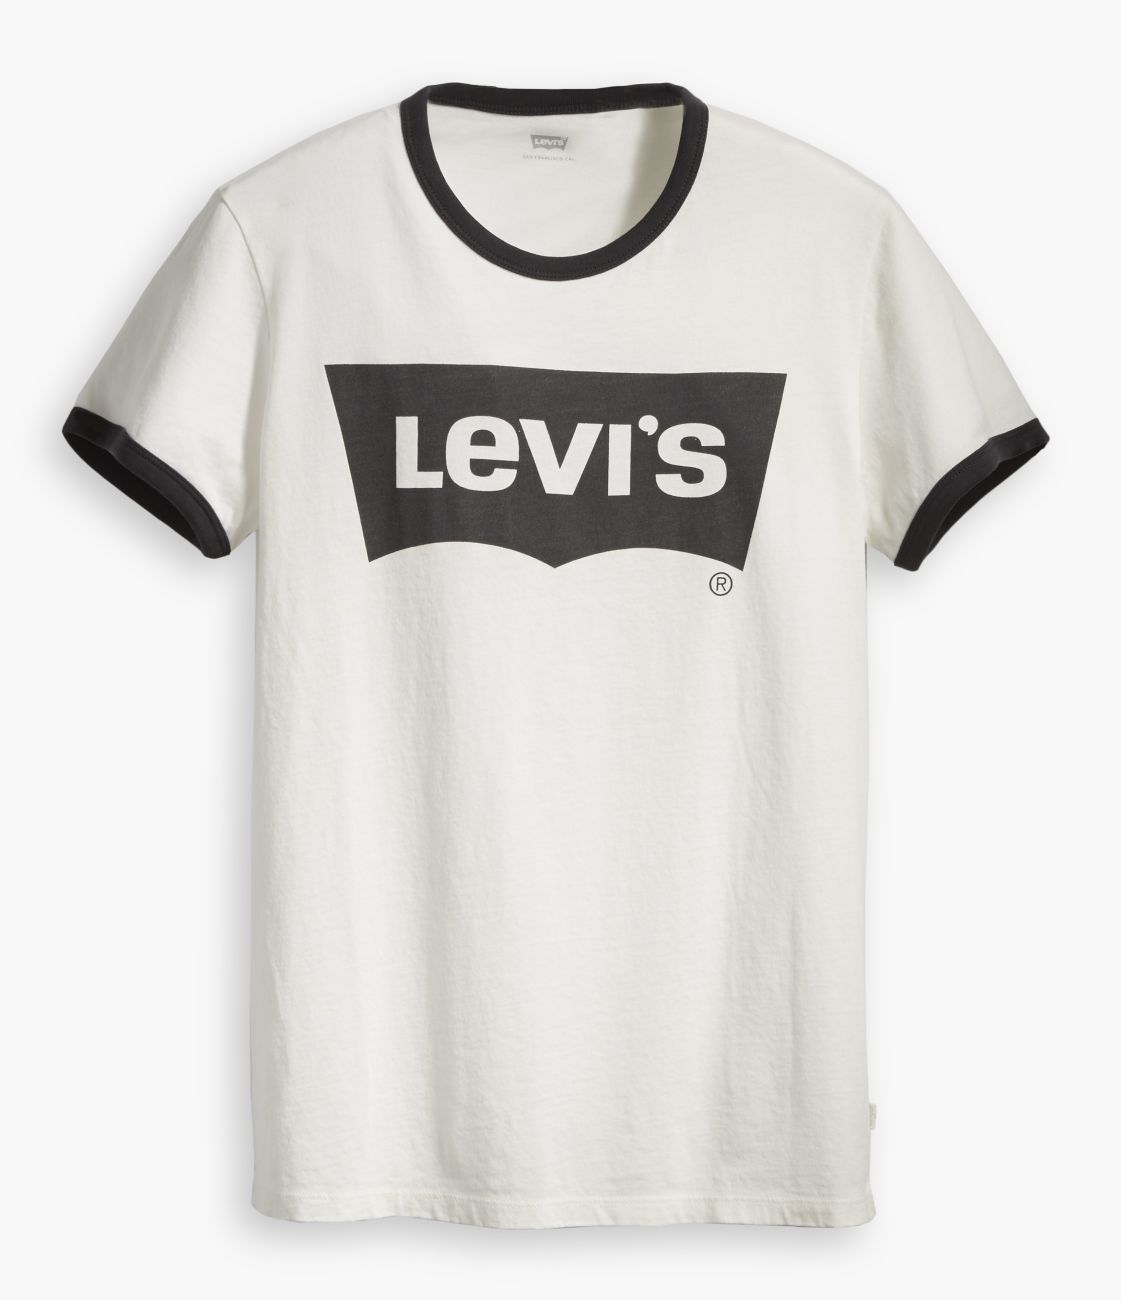 LEVIS Shirts f. Damen T-Shirt 35793-0010 weiss W18-LDT1